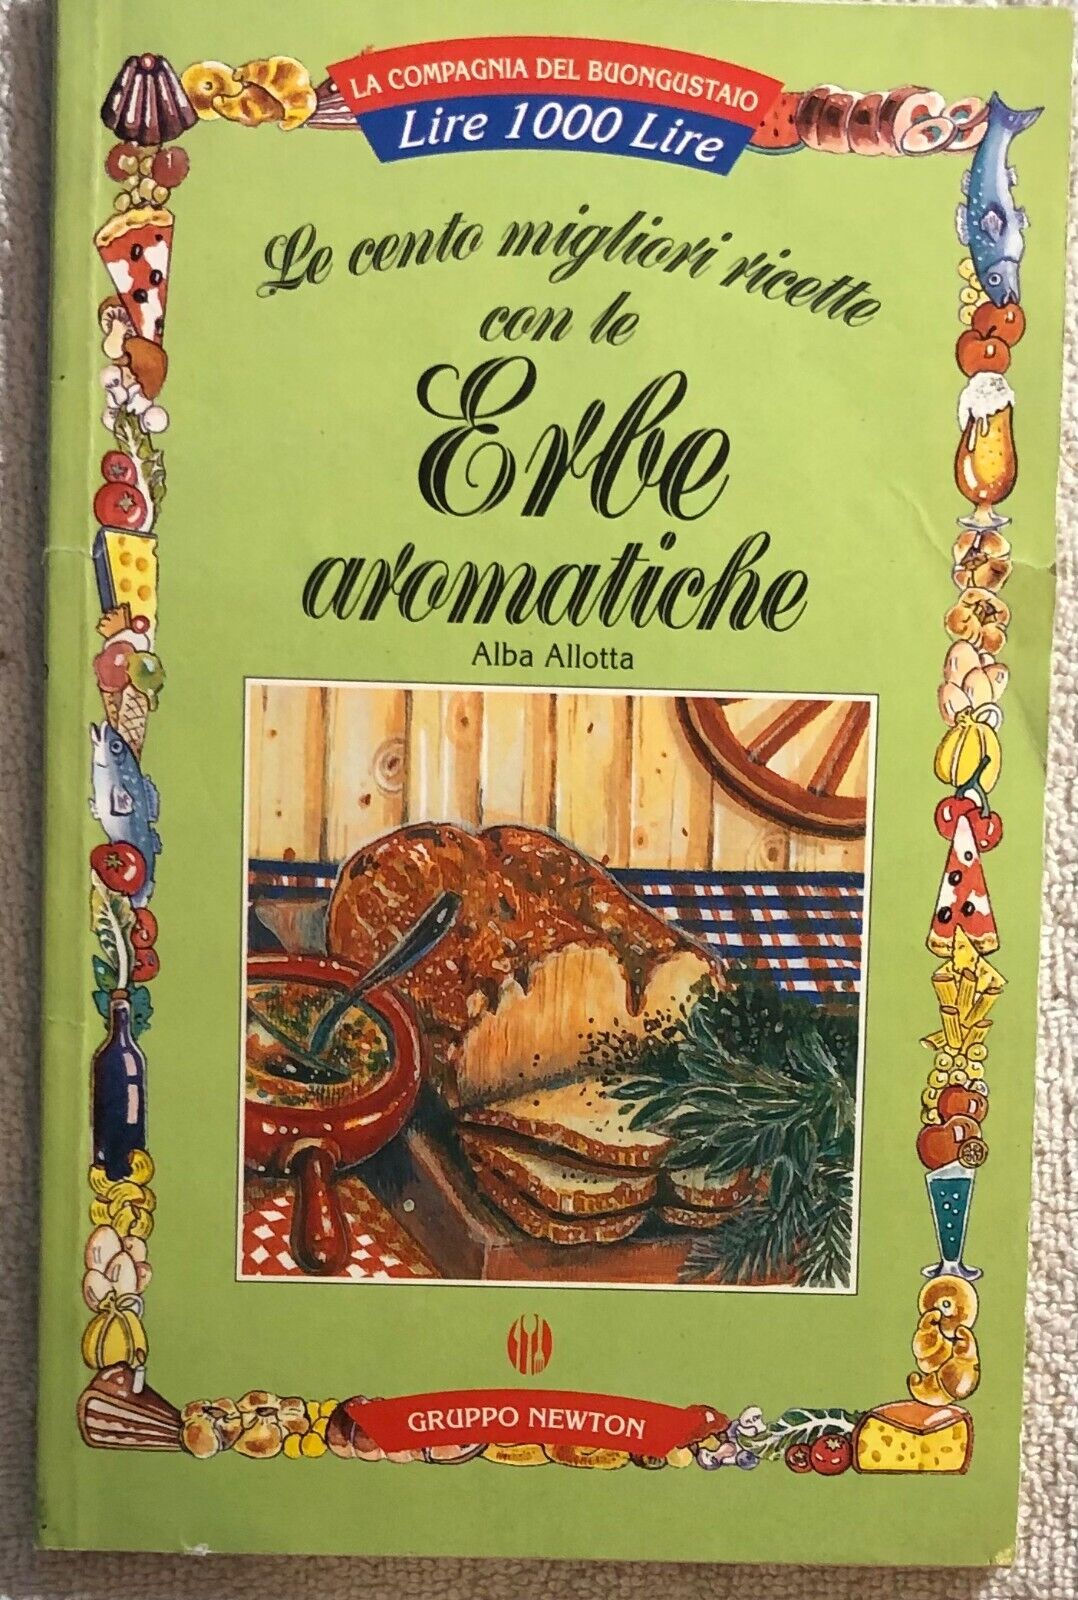 Le cento migliori ricette con le erbe aromatiche di Alba Allotta,  1999,  Newton